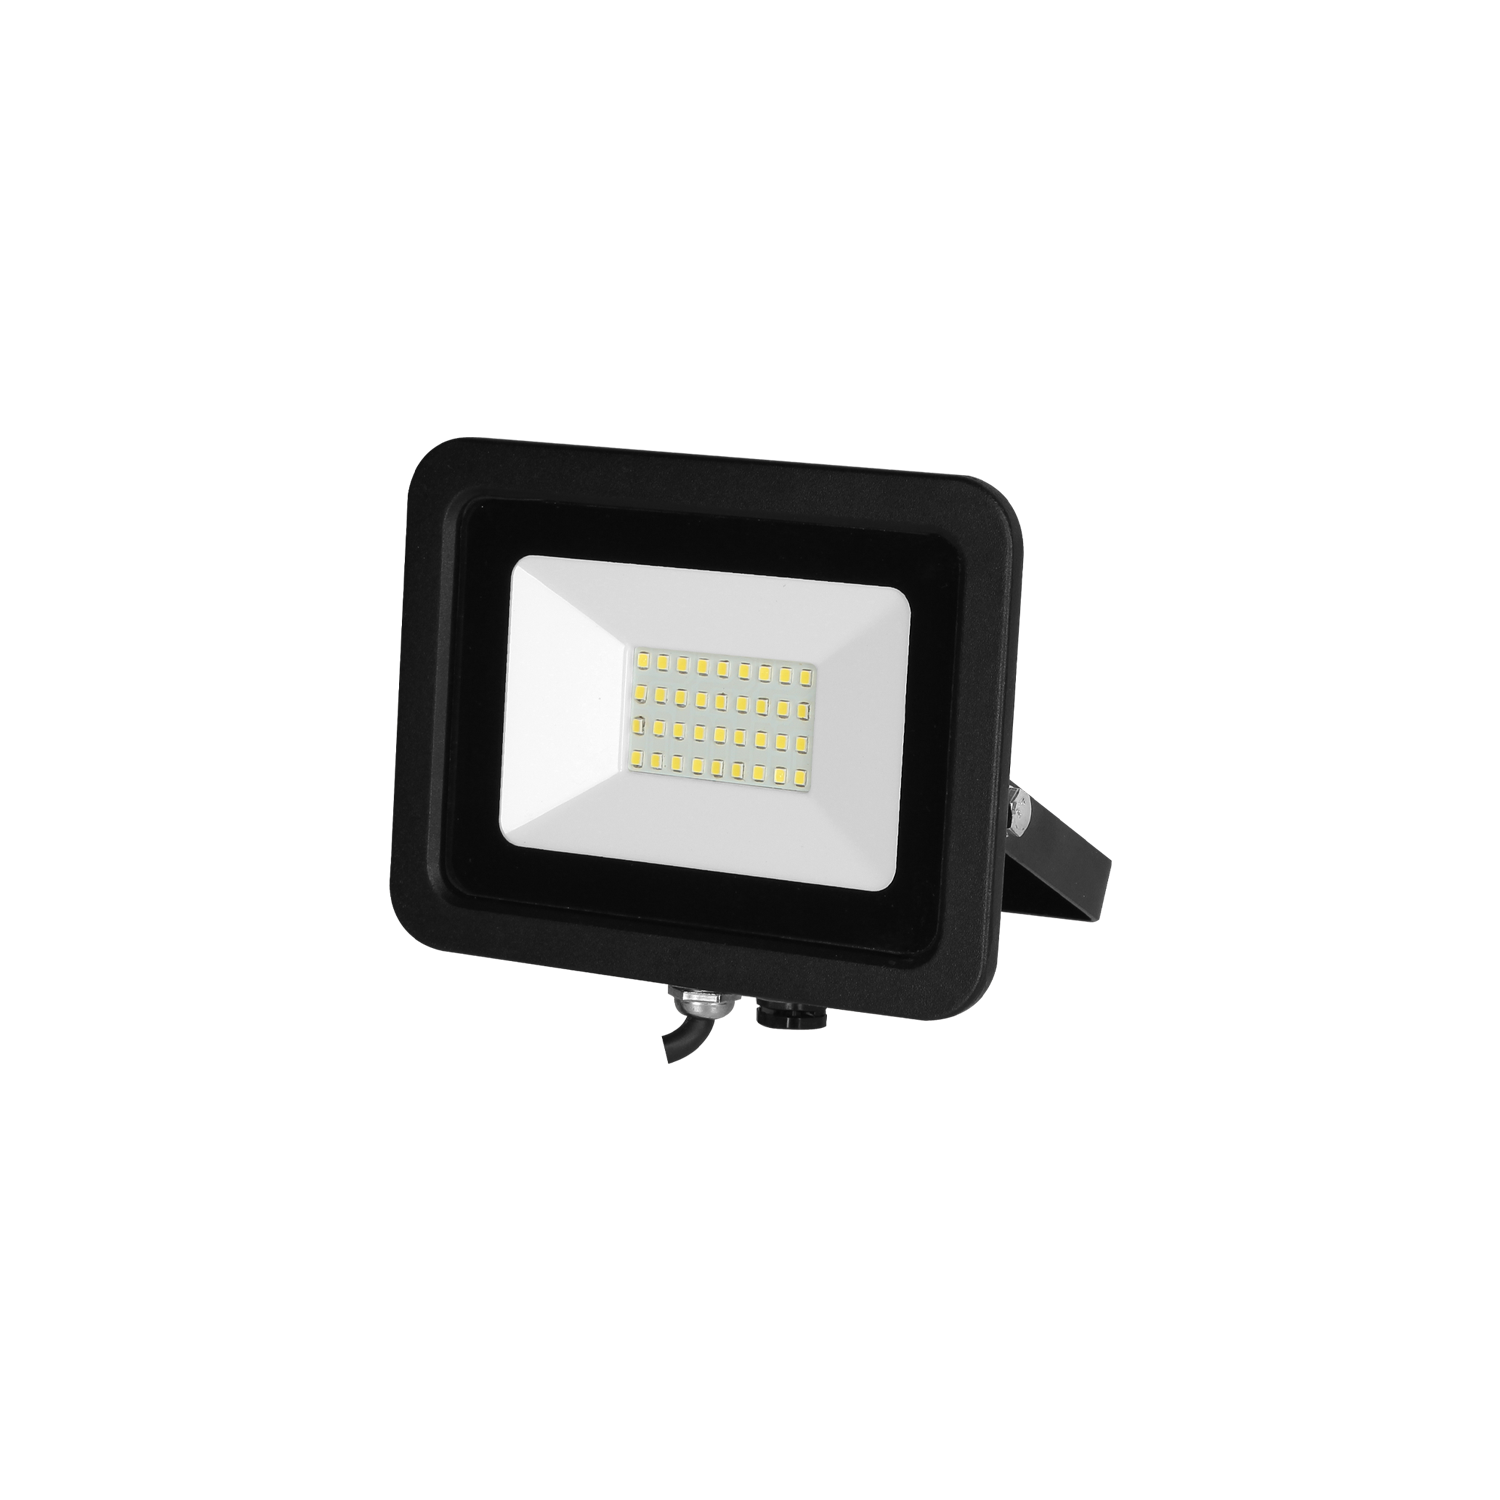 Pack de Reflector Illux para exterior LED 30W, RL-3630.N